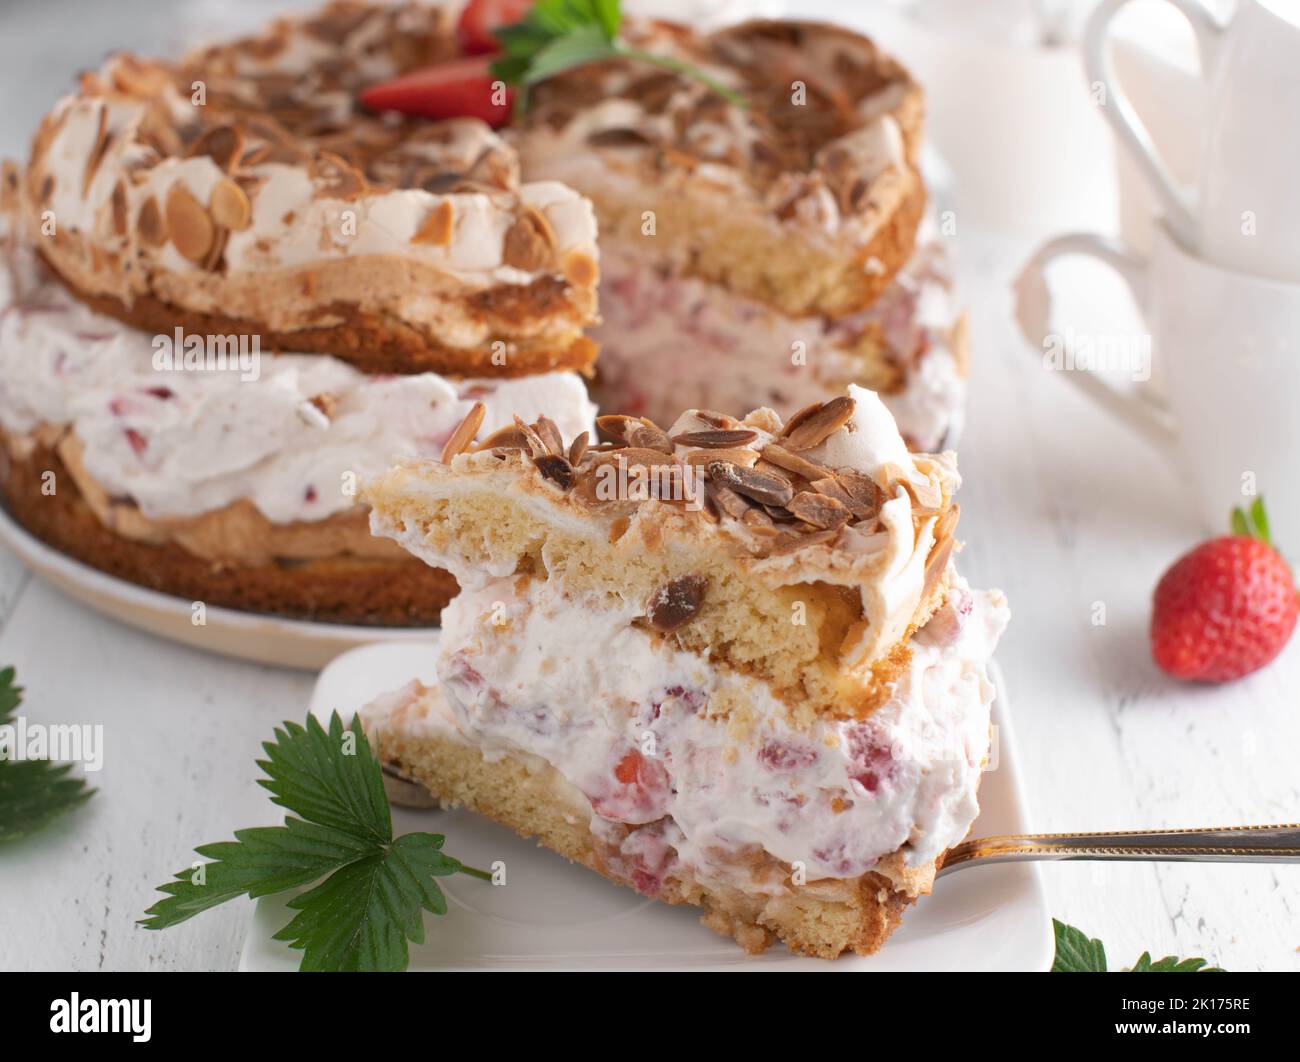 Gâteau à la crème fraise avec meringue, garniture aux amandes. Dessert allemand traditionnel Banque D'Images